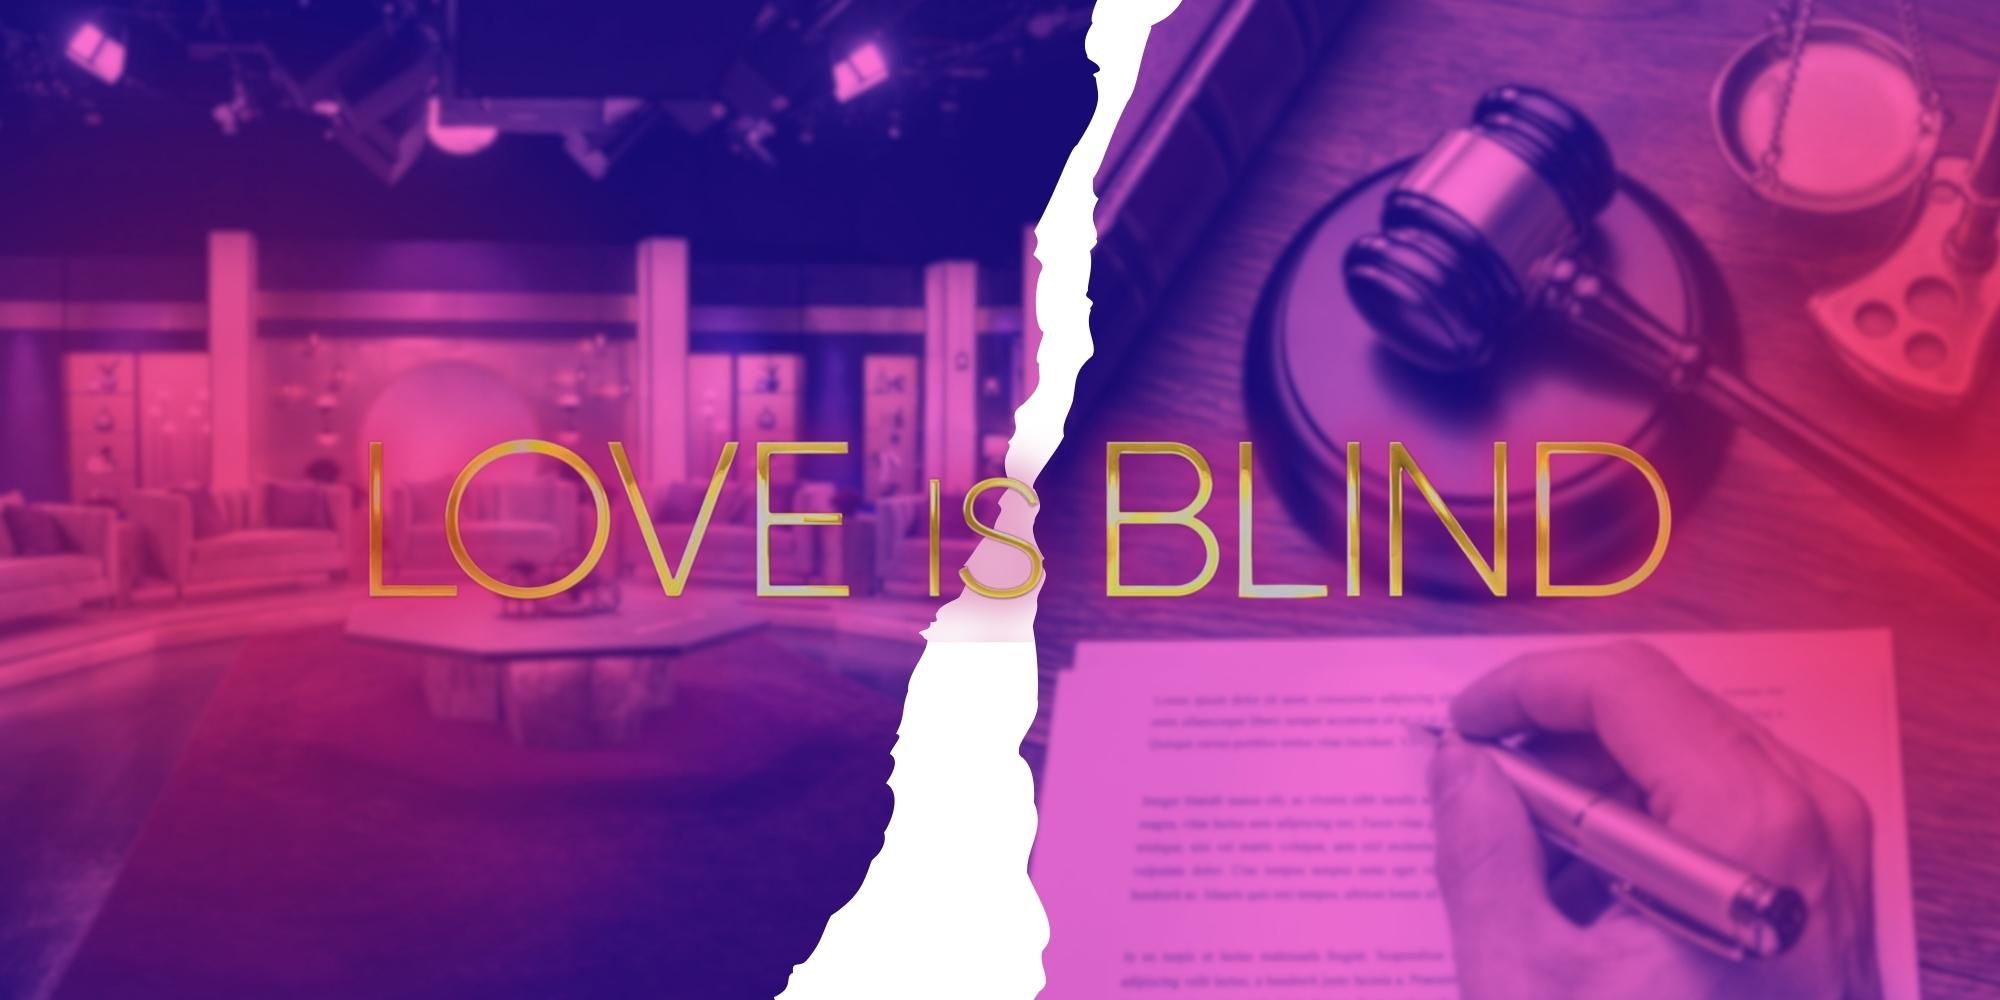 Renee Poche de la temporada 5 de Love Is Blind presenta una demanda explosiva por una supuesta experiencia “traumática”